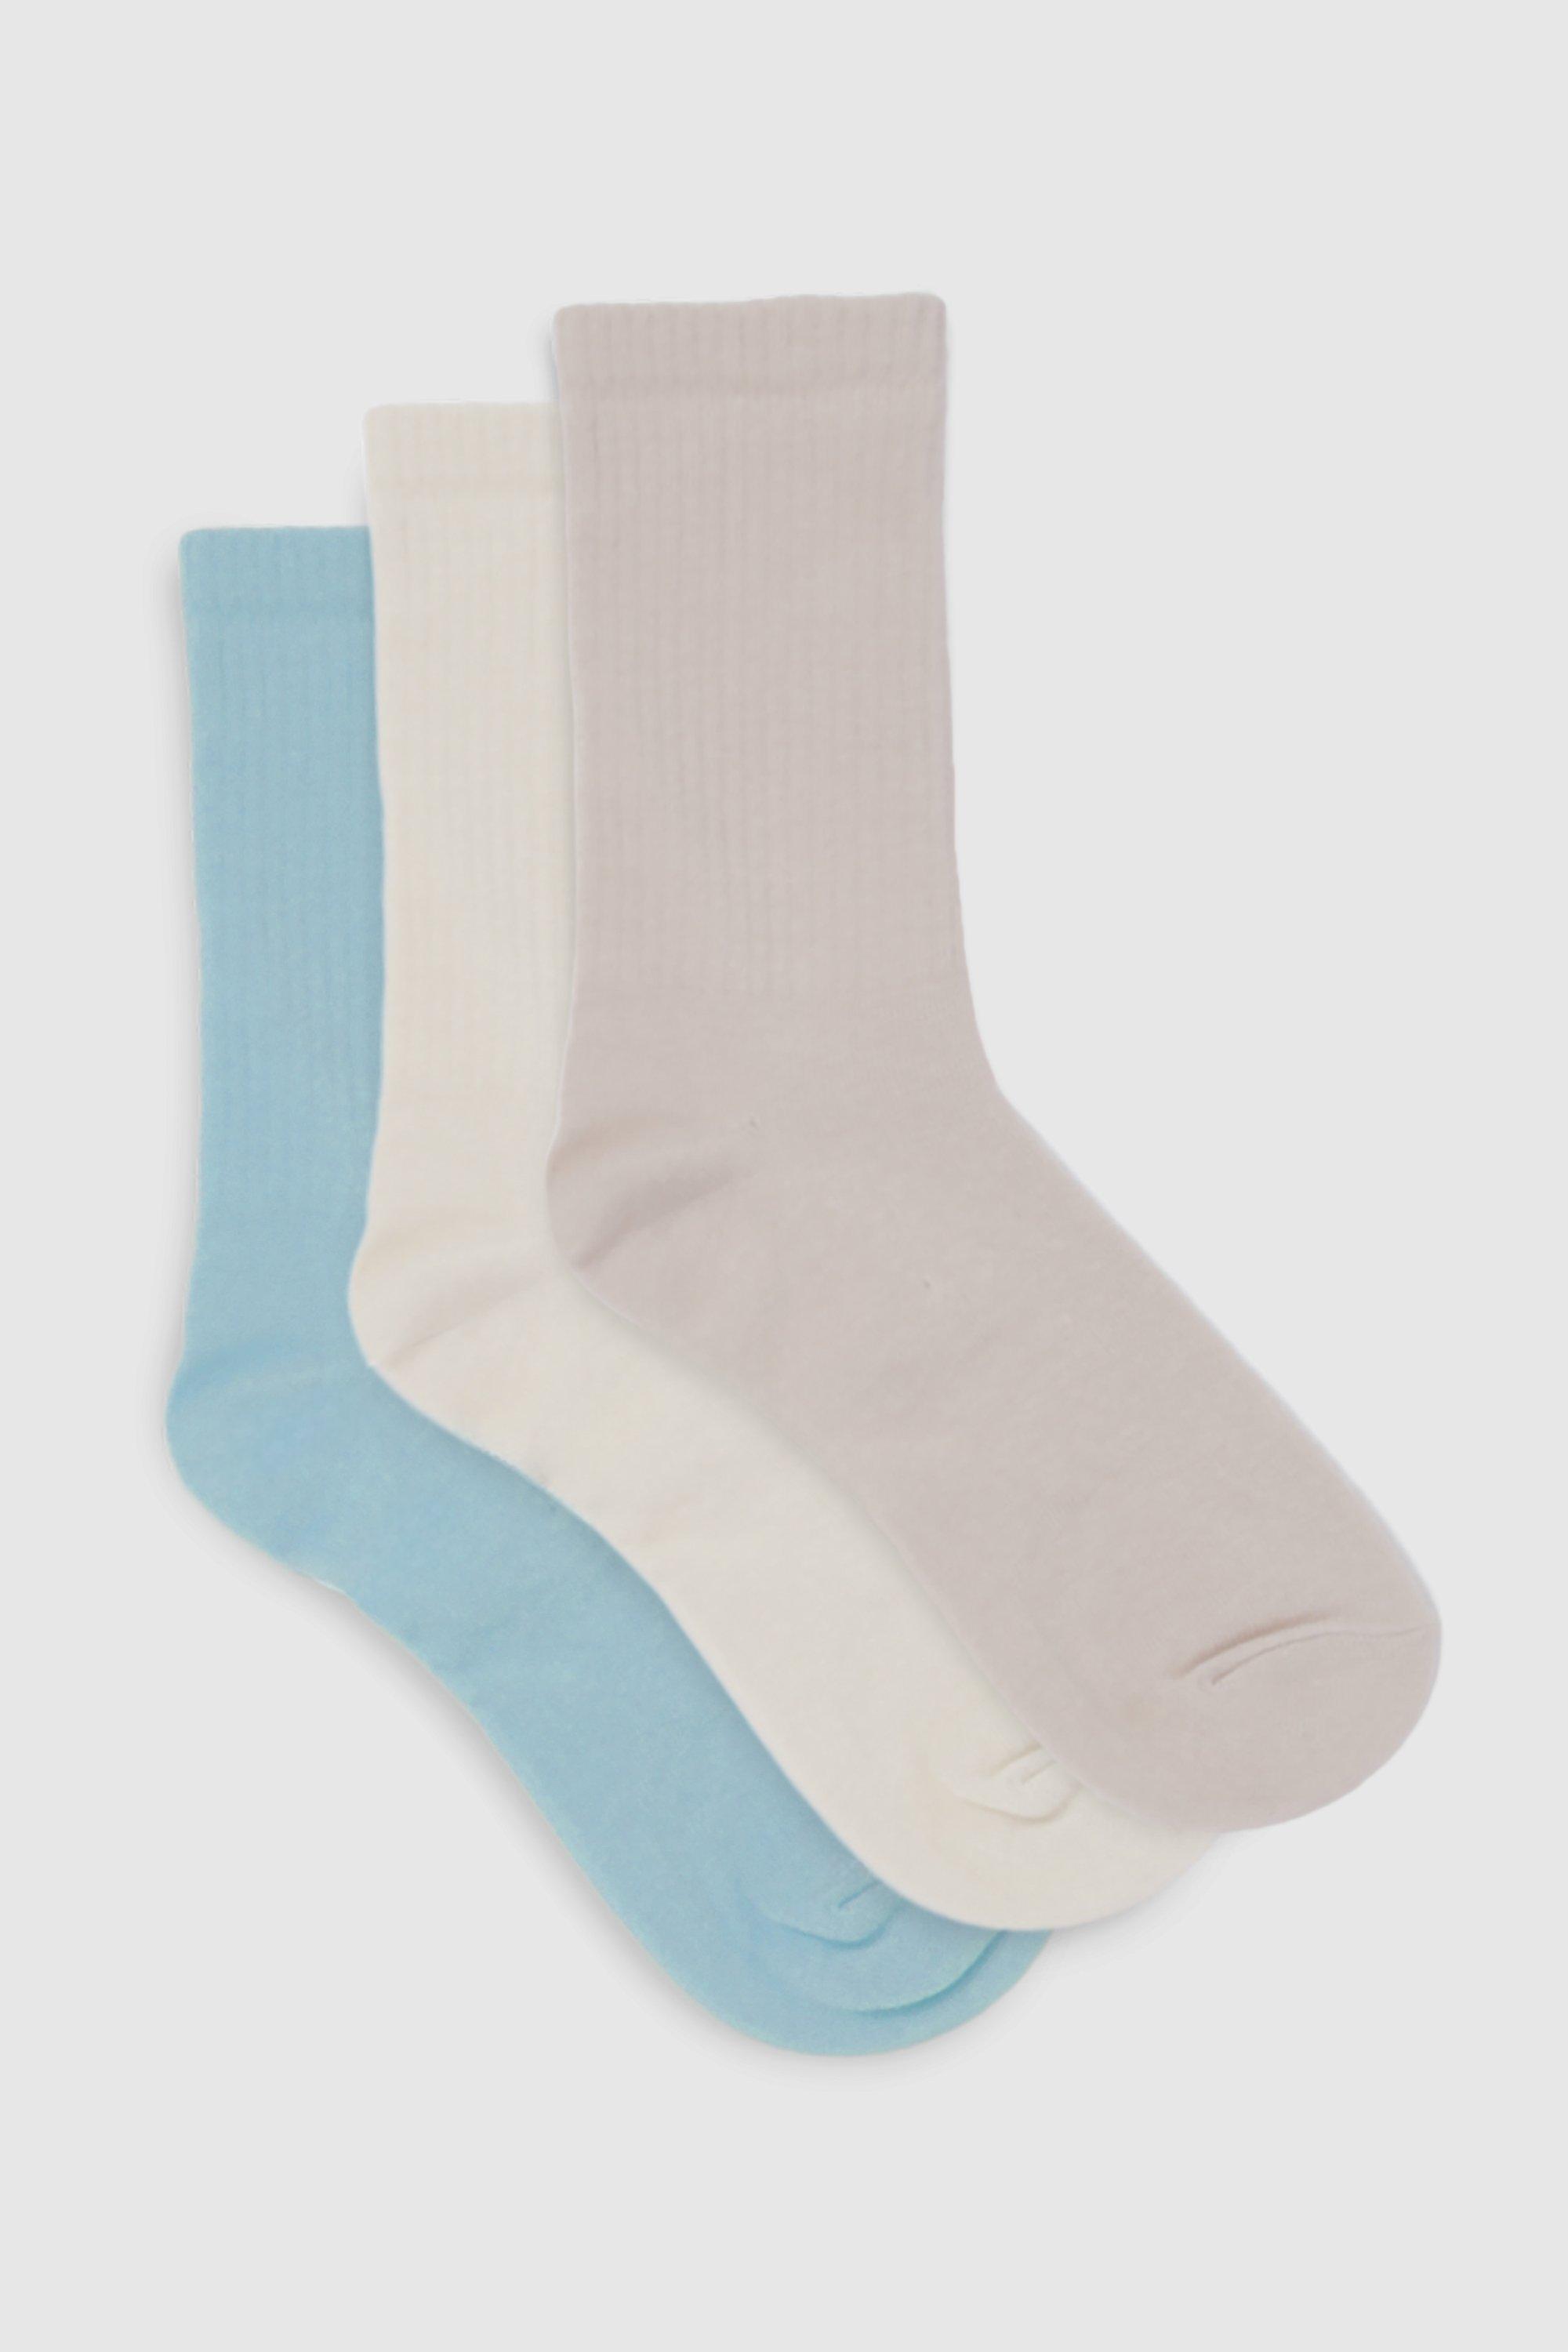 Image of Blue 3 Pack Socks, Multi